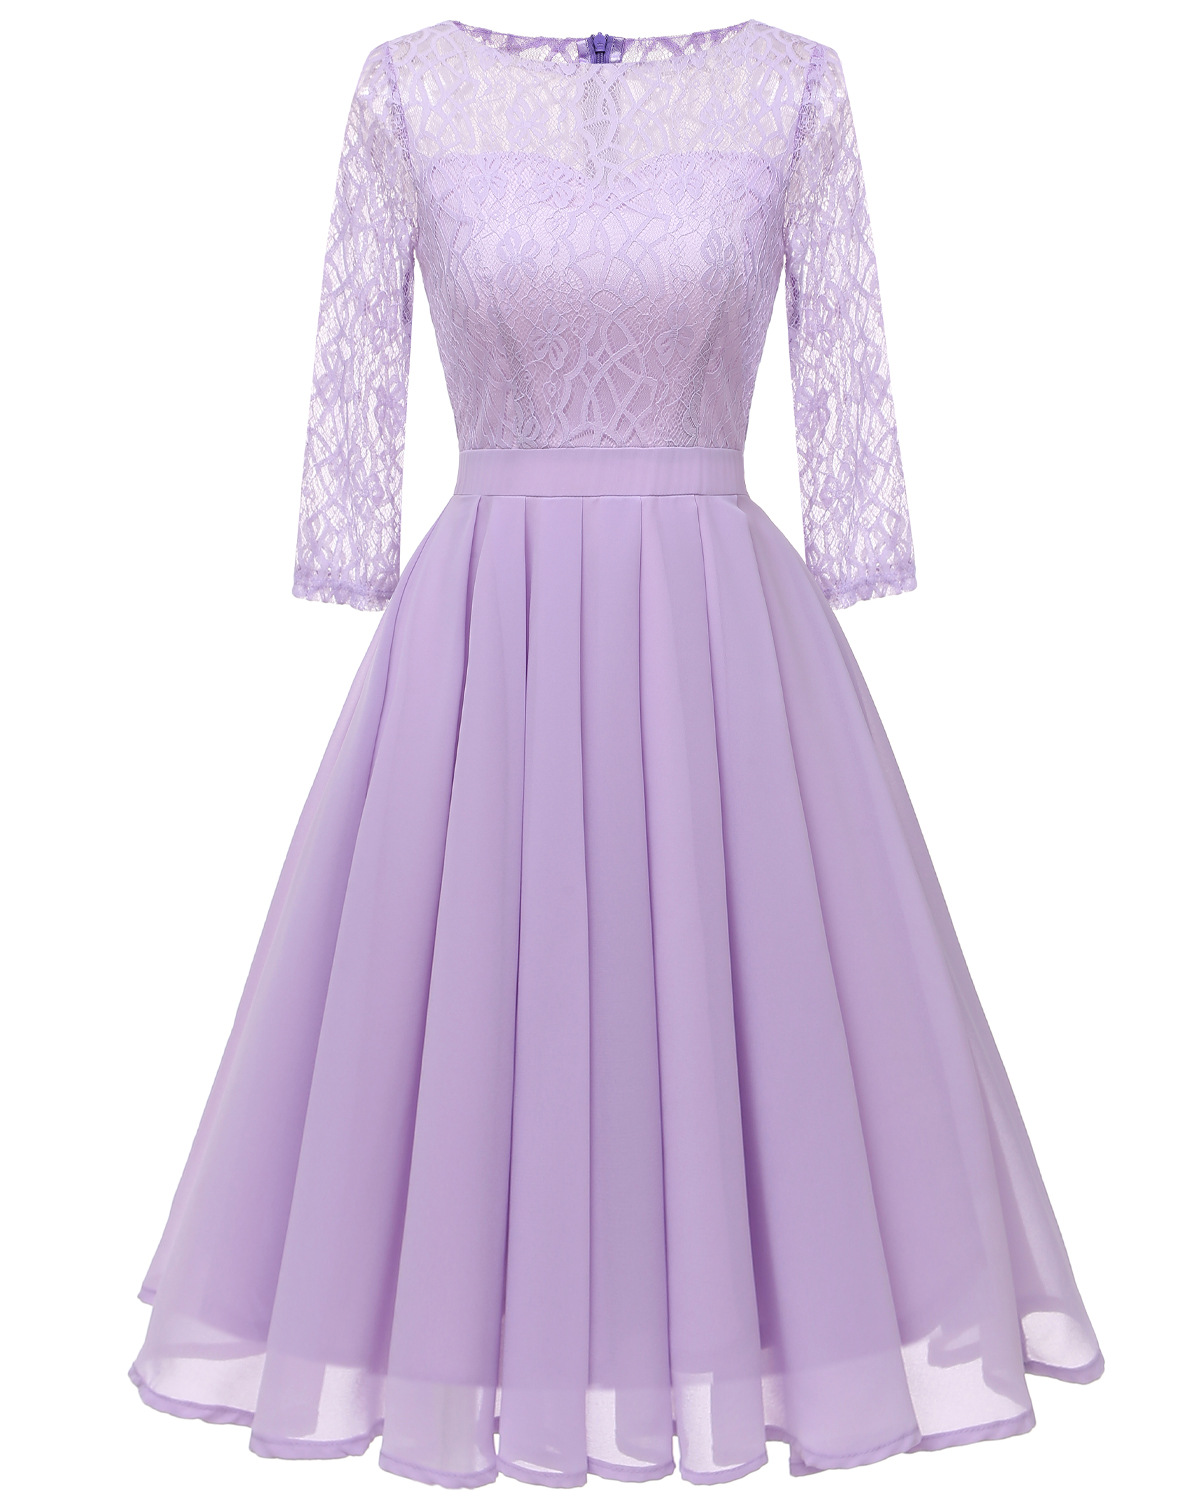 Elegant Patchwork Solid Color Half Sleeve Dress